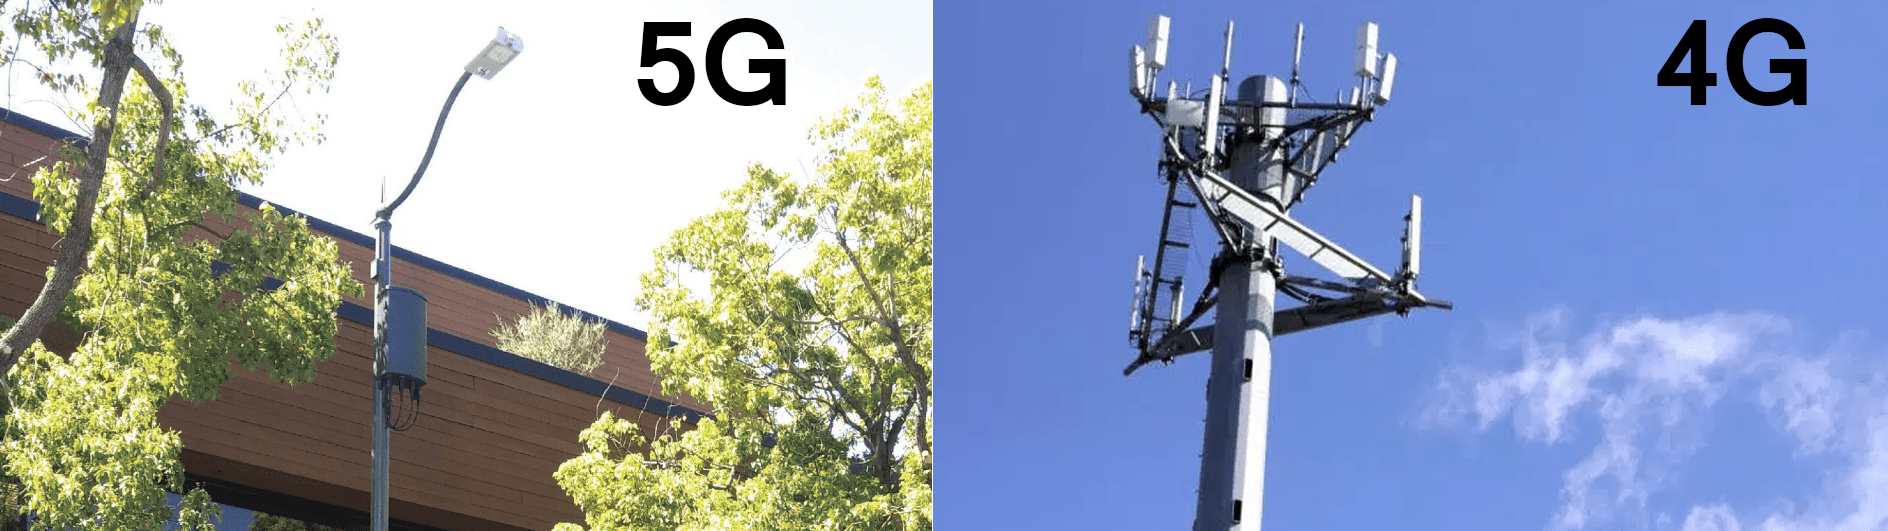 Как выглядит антенна 5g на улице фото